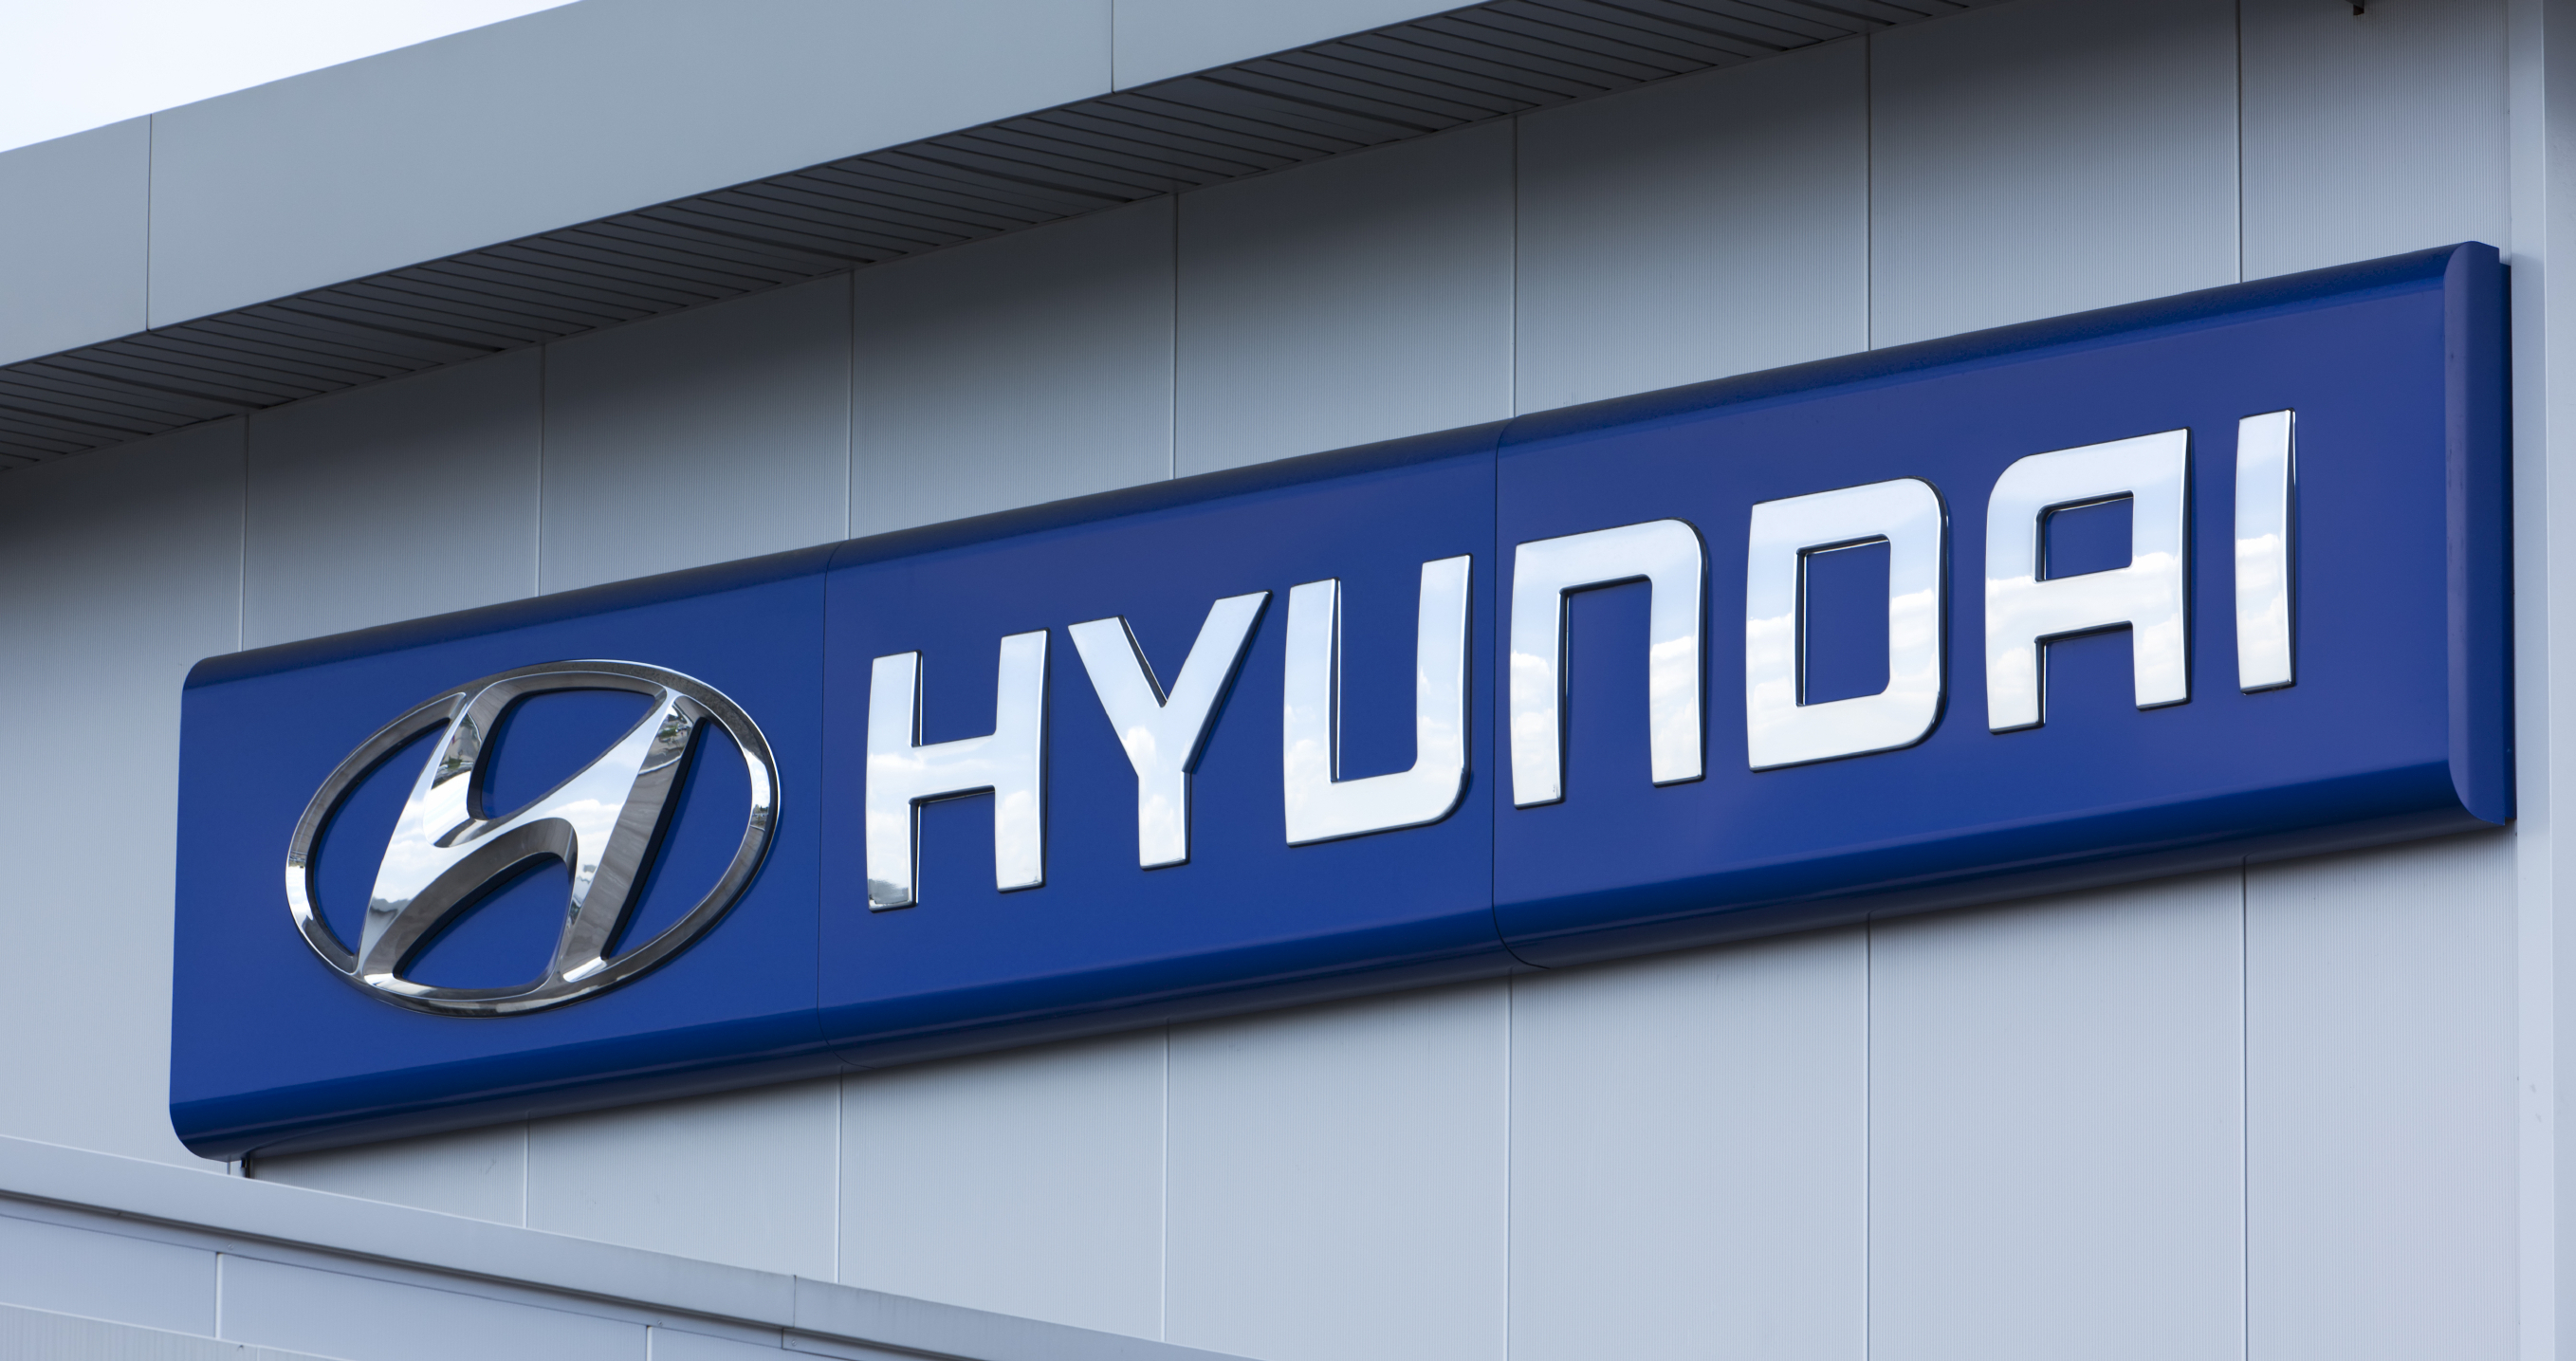 Hyundai sign on wall